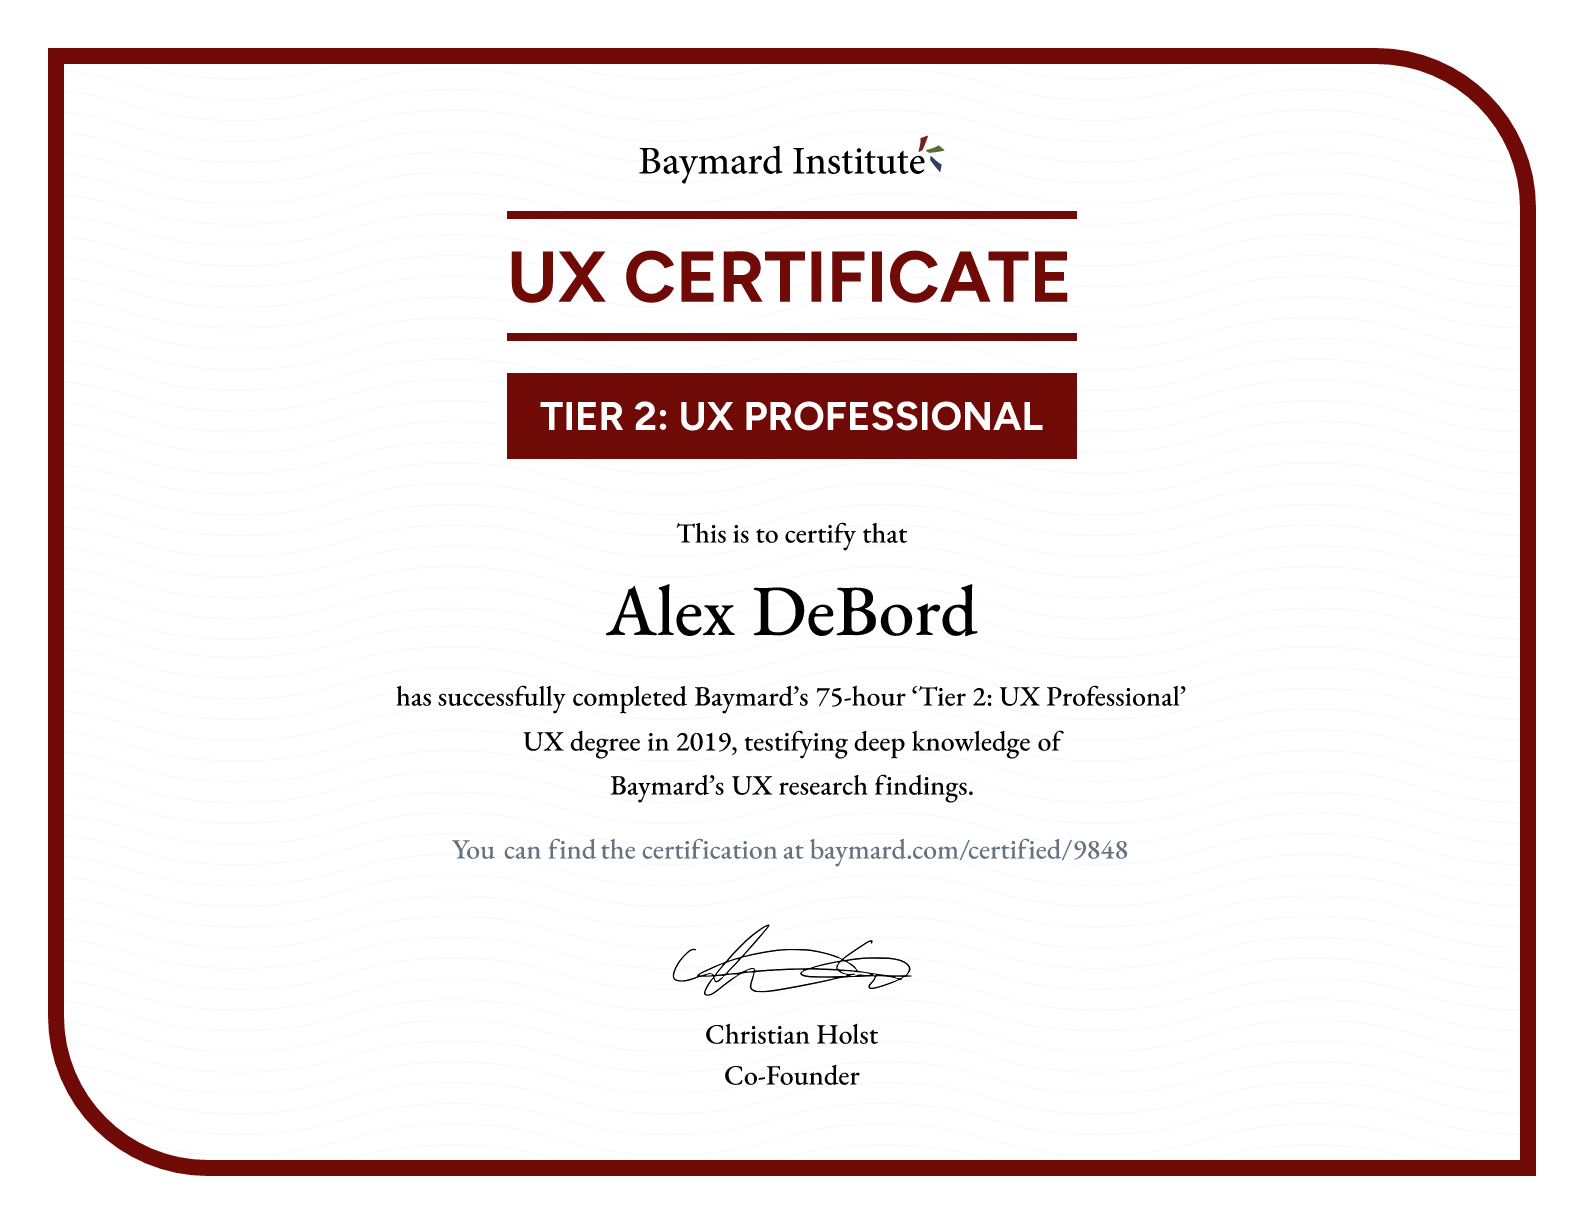 Alex DeBord’s certificate